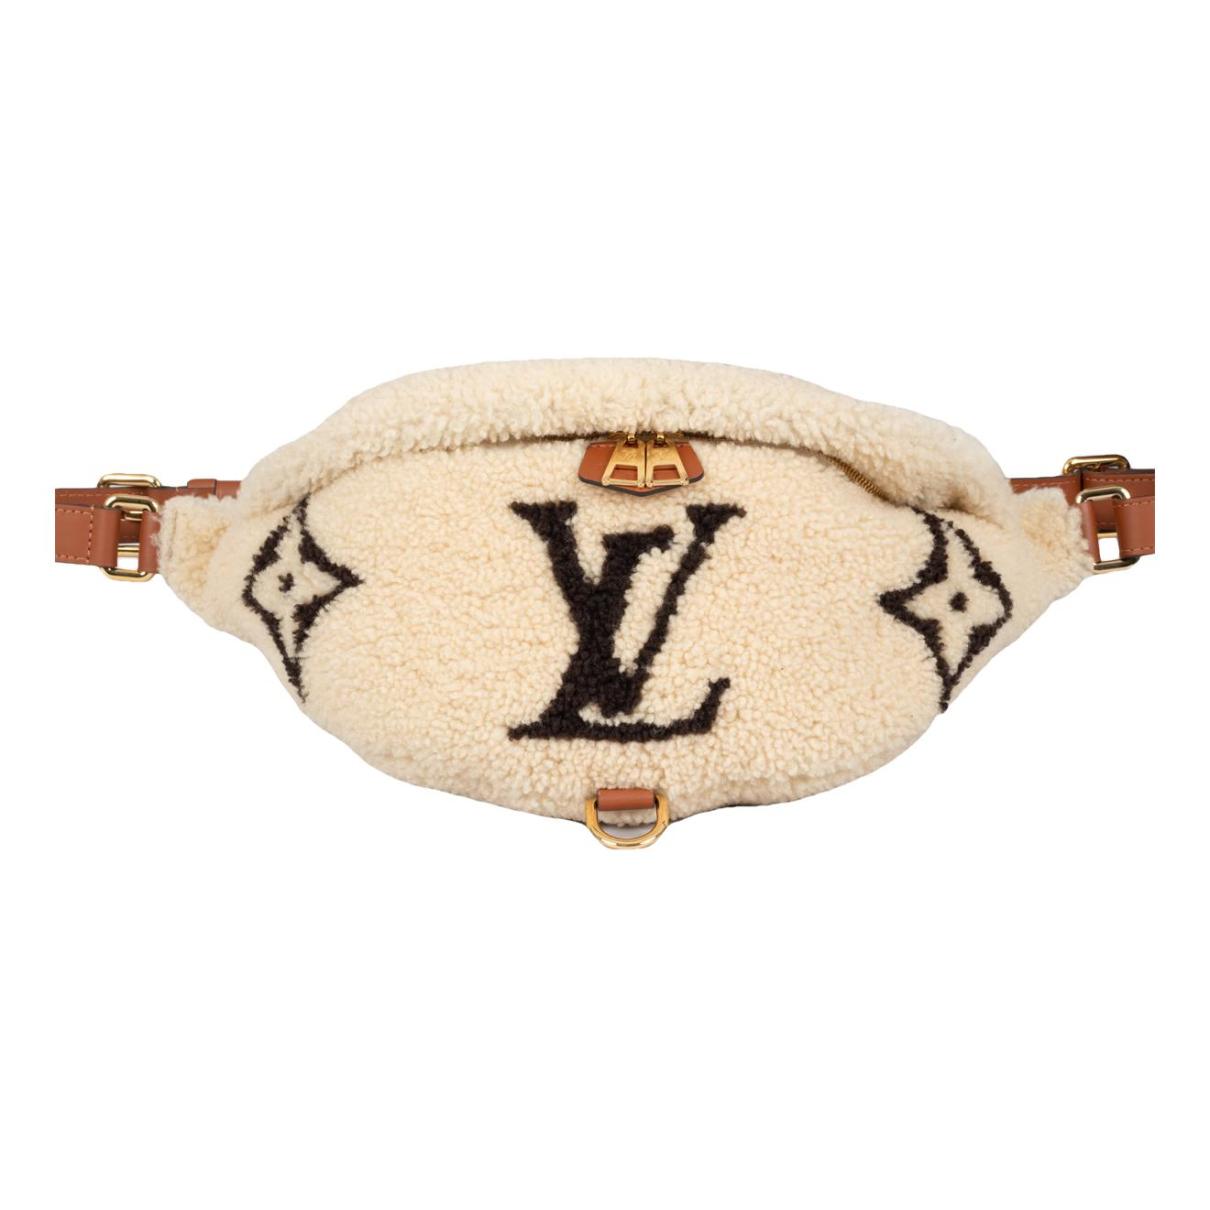 Louis Vuitton - Authenticated Boîte Chapeau Souple Handbag - Leather Brown for Women, Very Good Condition